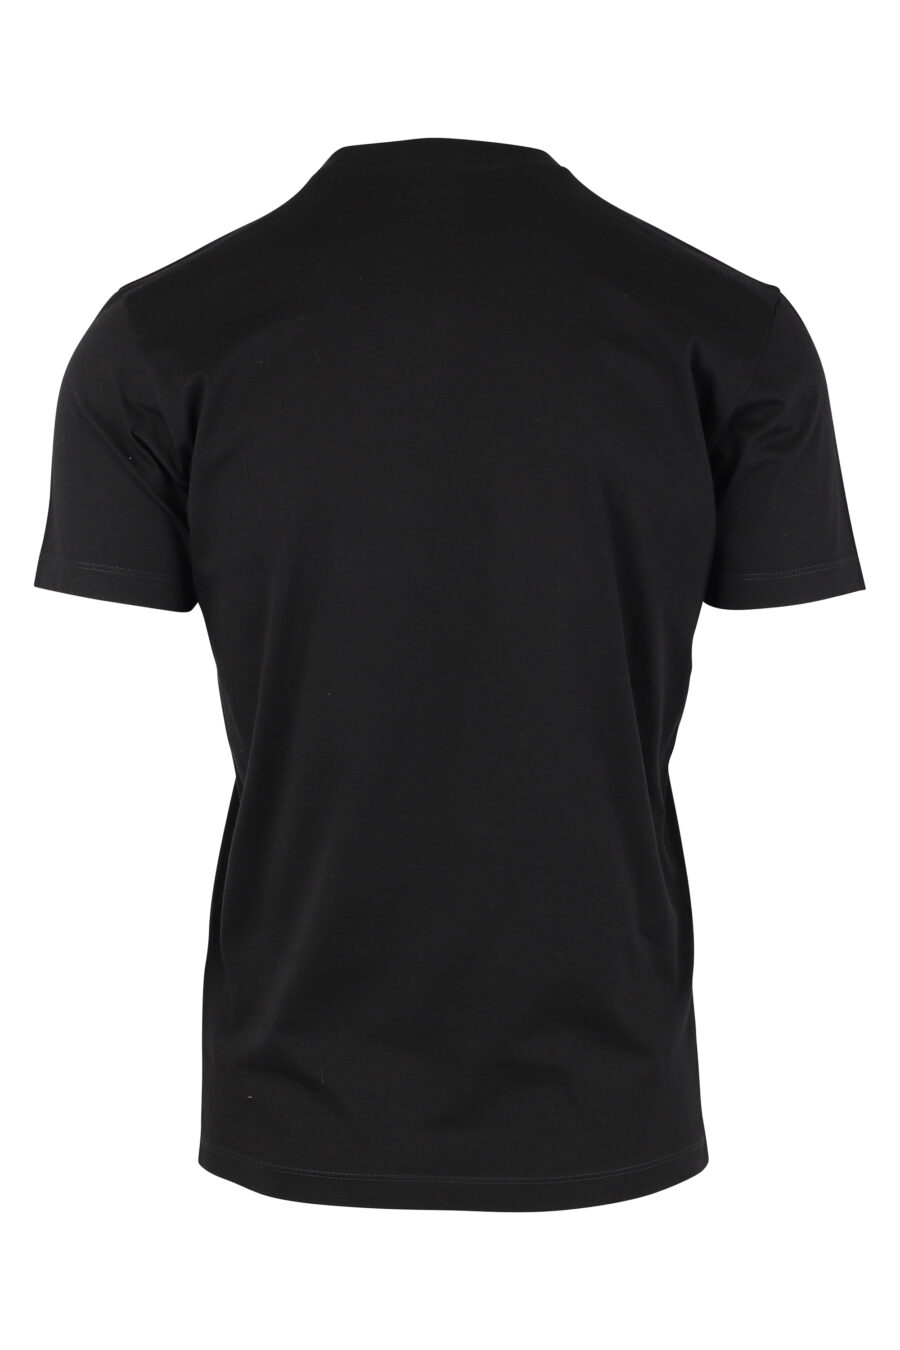 Camiseta negra con minilogo "icon" - IMG 9767